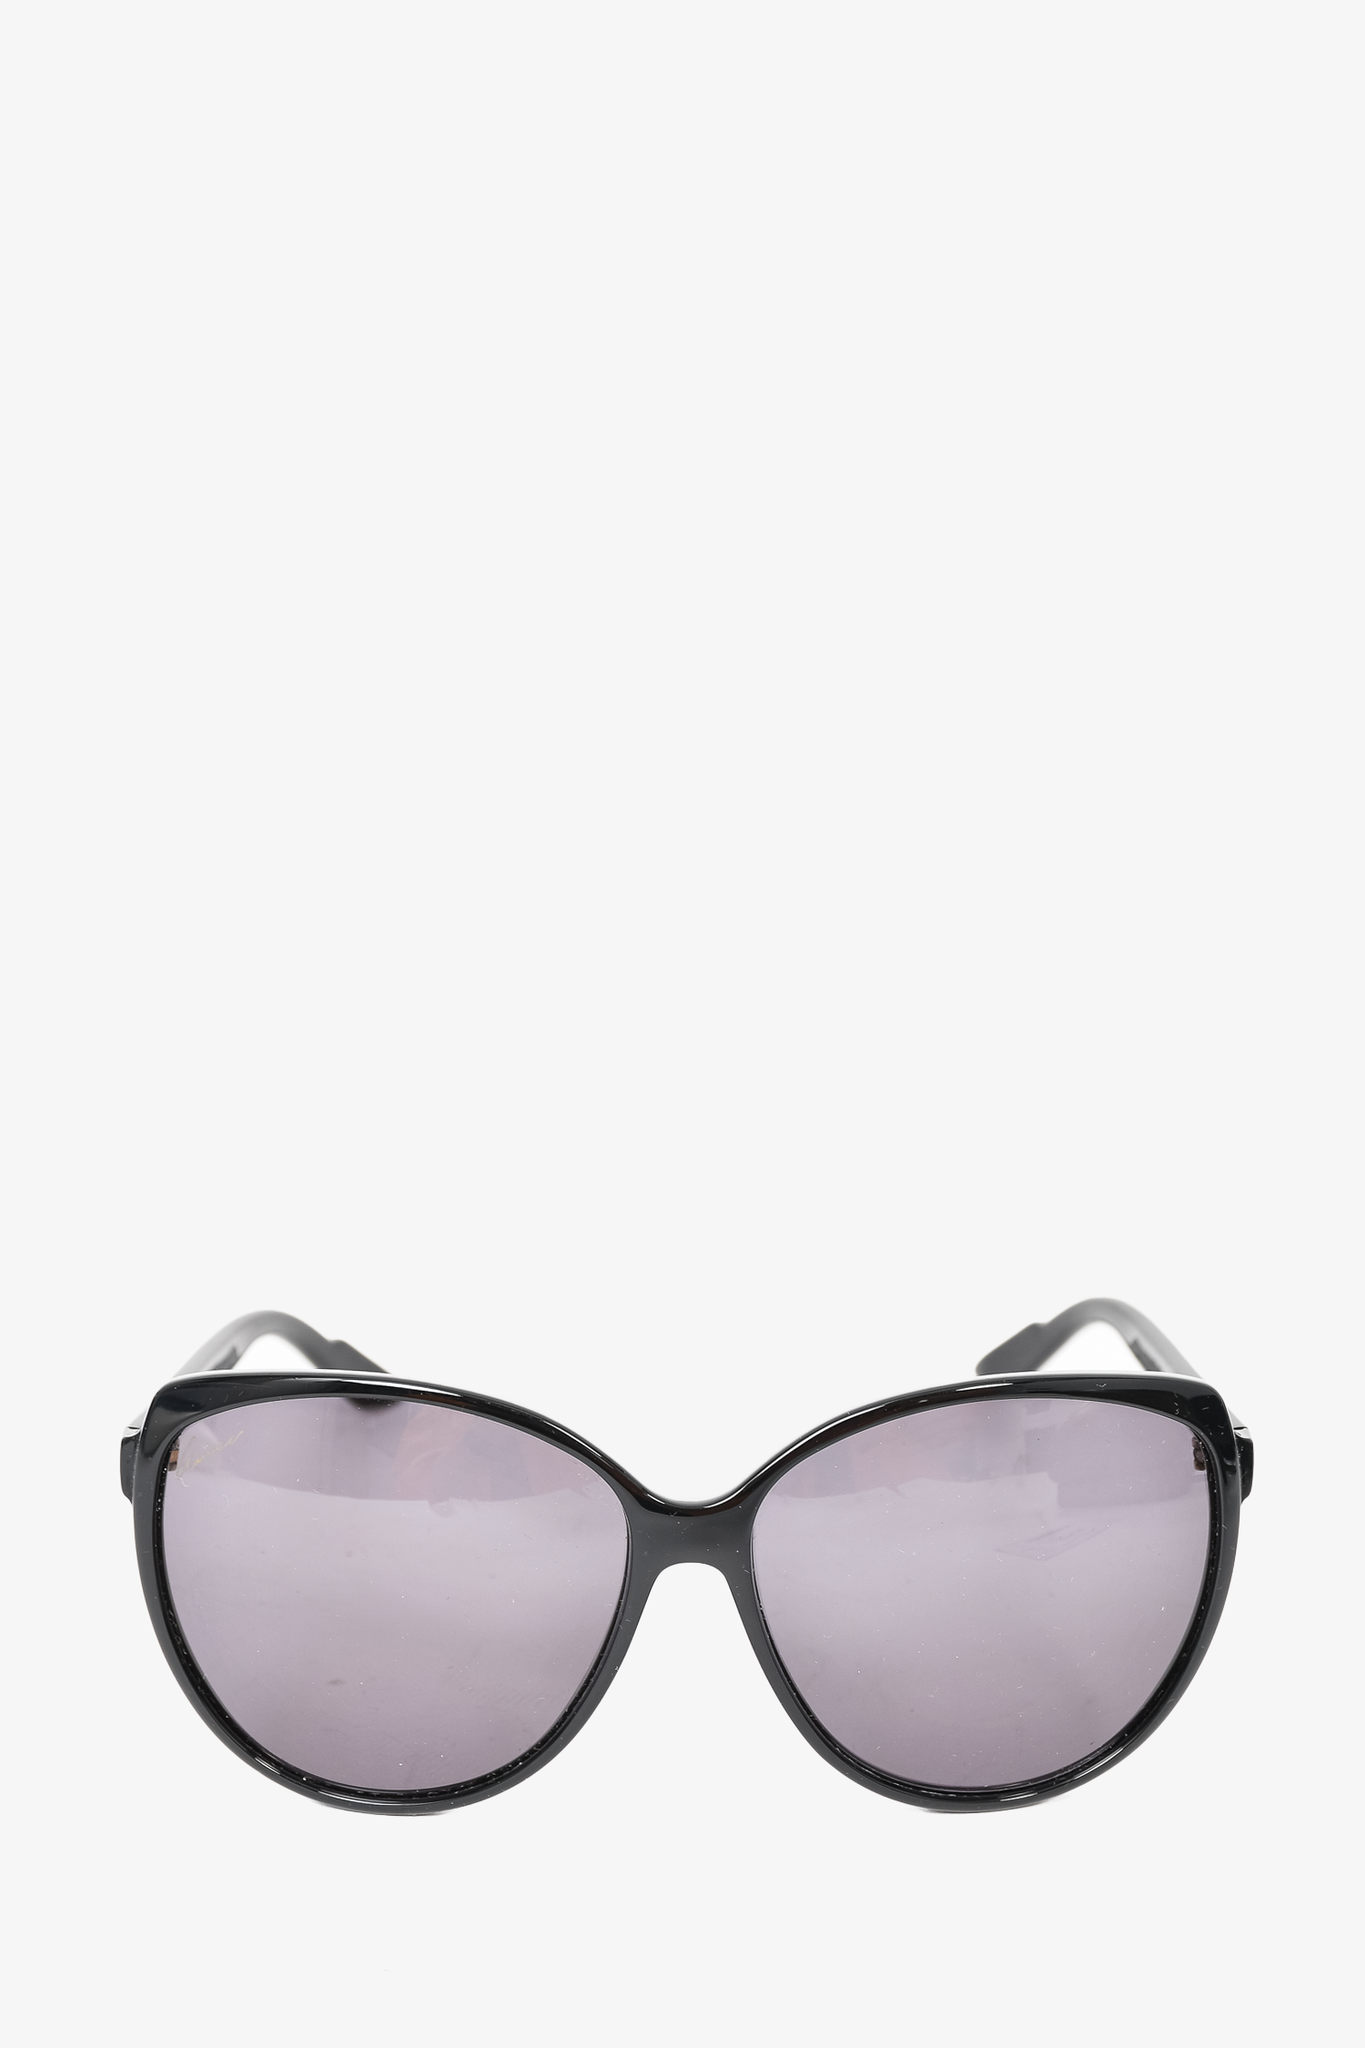 Louis Vuitton LV Escape Square Sunglasses Black Acetate. Size W